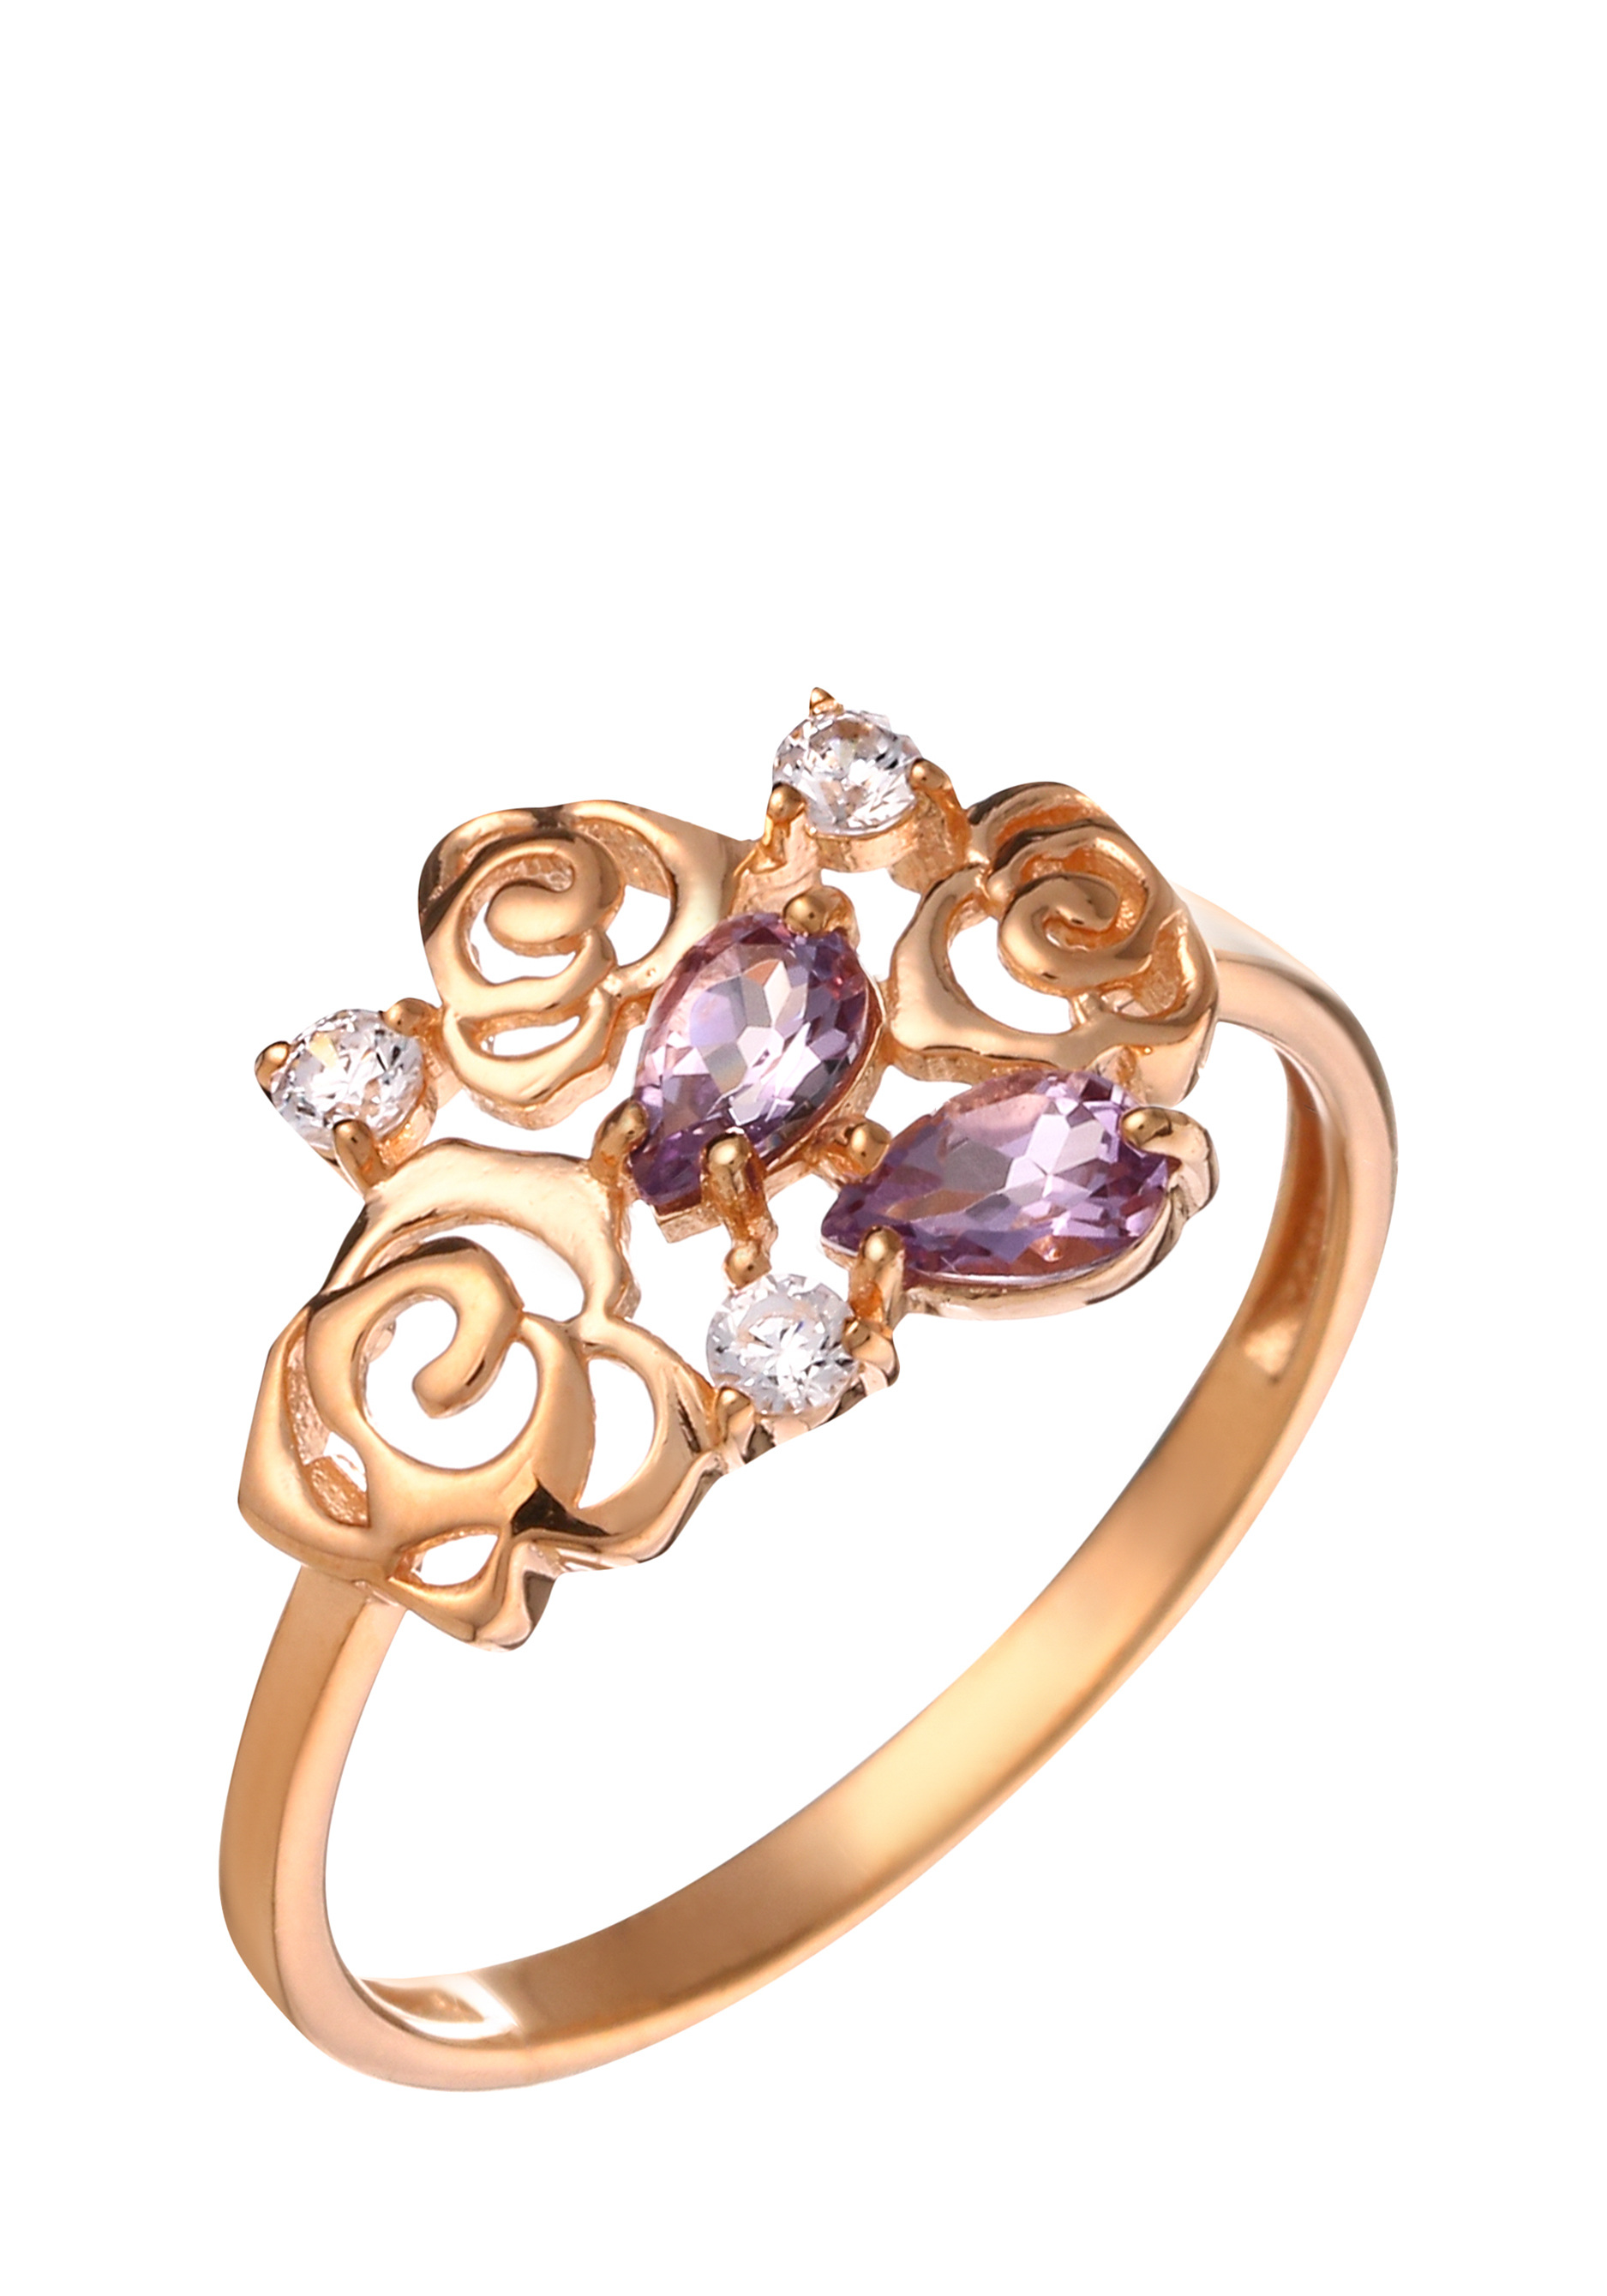 Кольцо серебряное "Прекрасная роза" Nouvelle, цвет фиолетовый, размер 19 кластер - фото 1